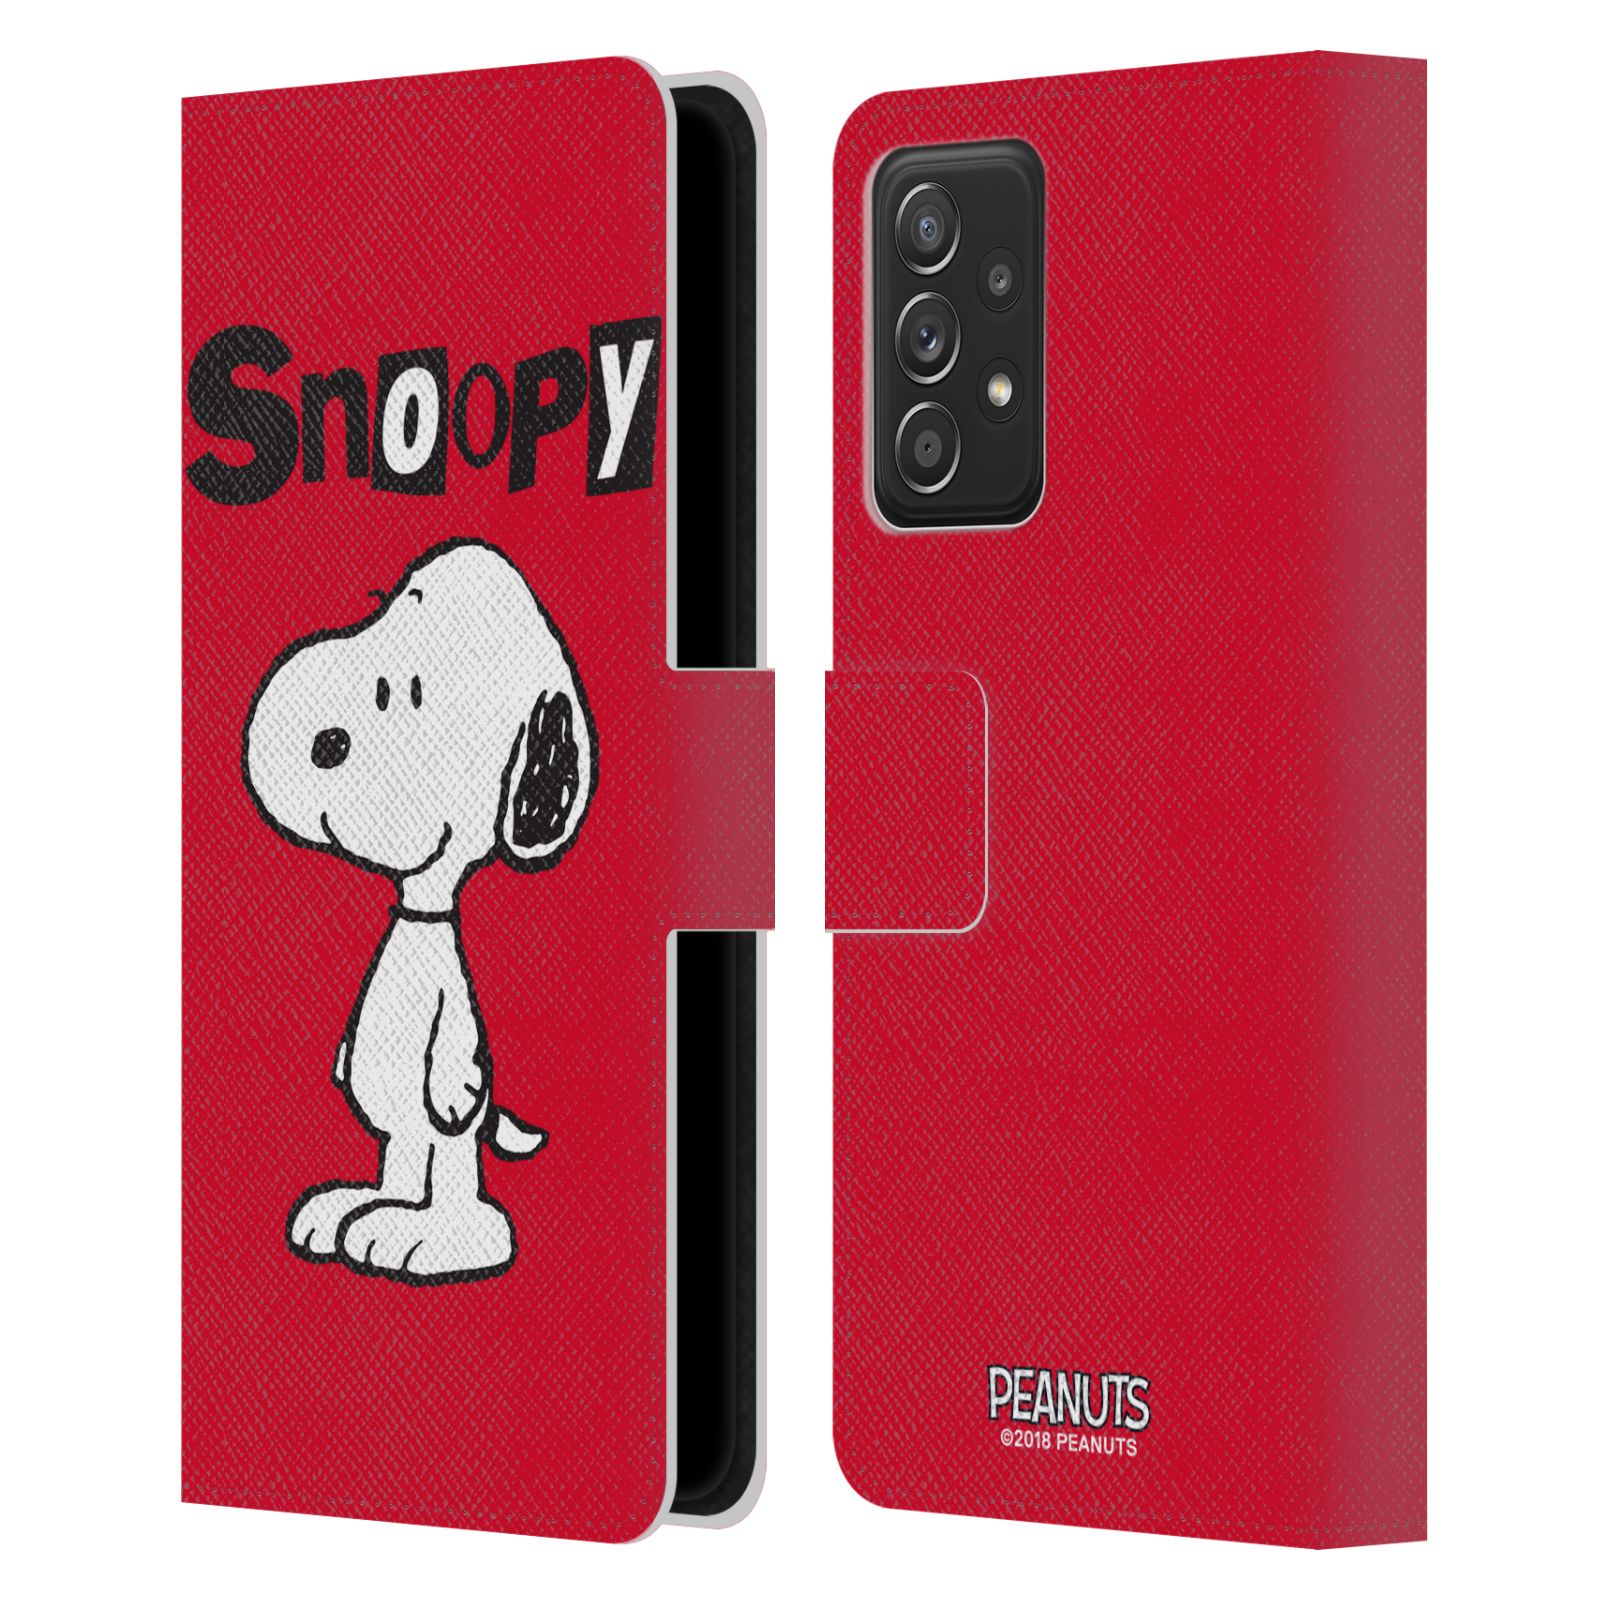 Pouzdro na mobil Samsung Galaxy A52 / A52 G - HEAD CASE - Peanuts - Snoopy červená